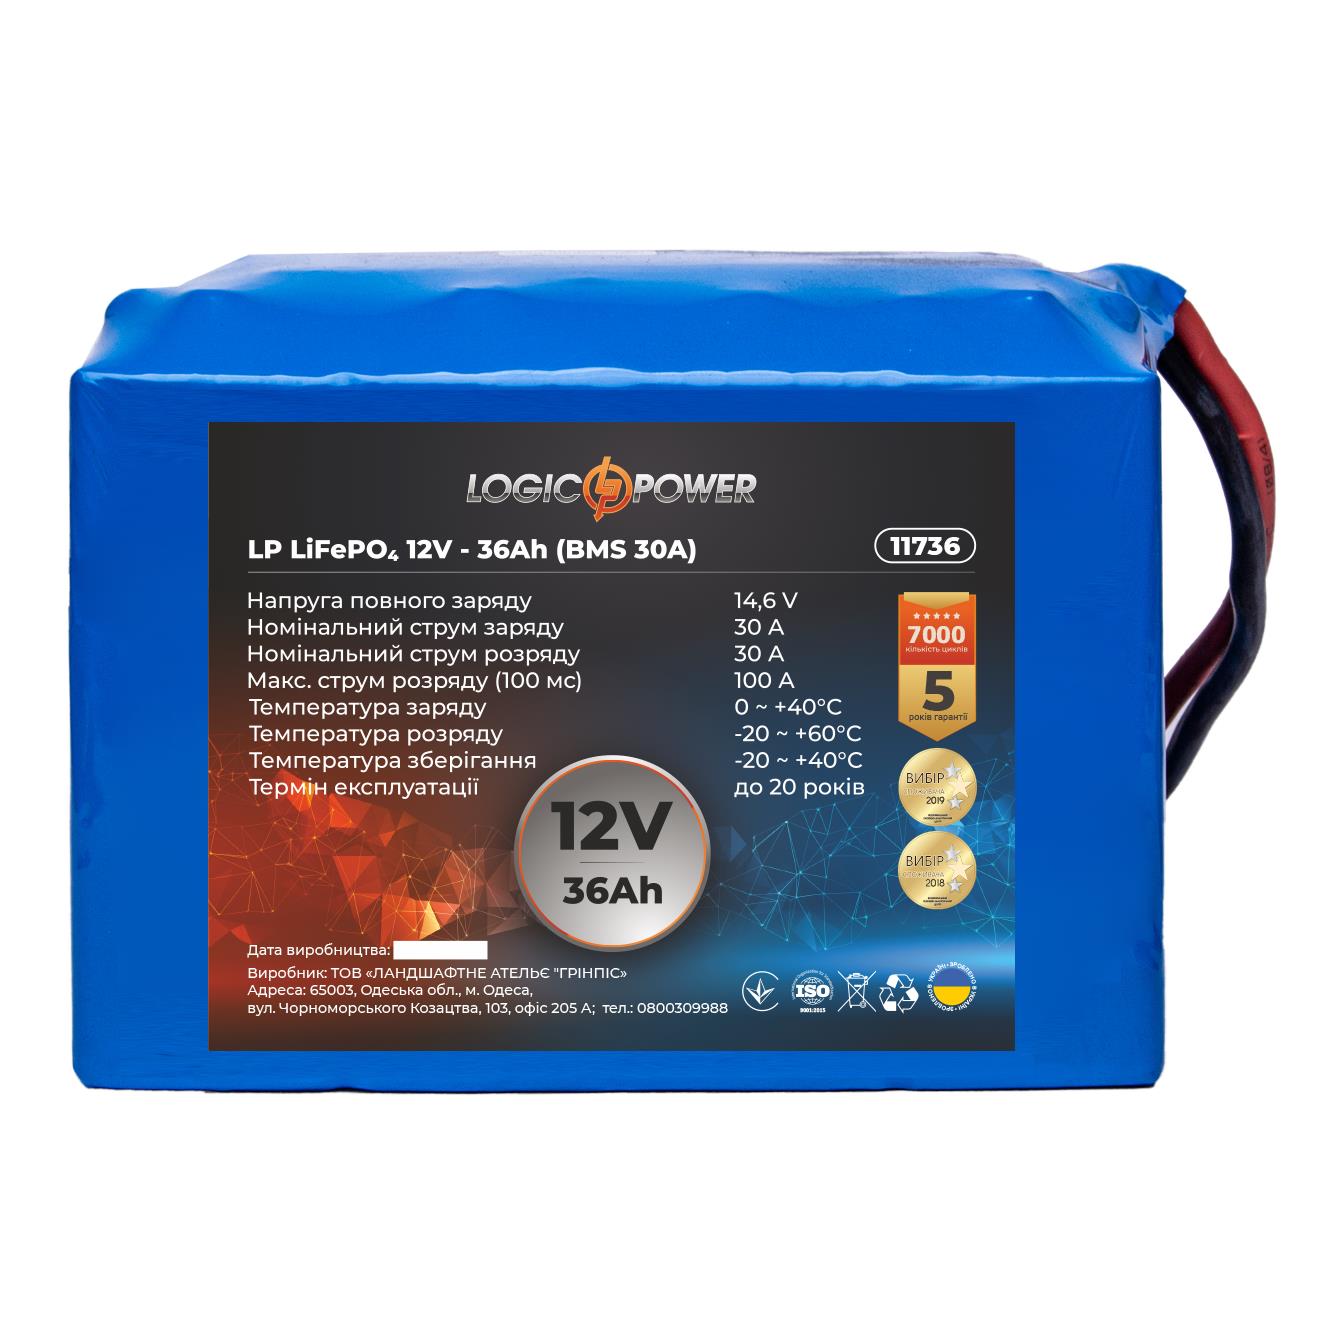 Цена аккумулятор 36 a·h LogicPower LP LiFePO4 12V - 36 Ah (BMS 30A) (11736) в Киеве